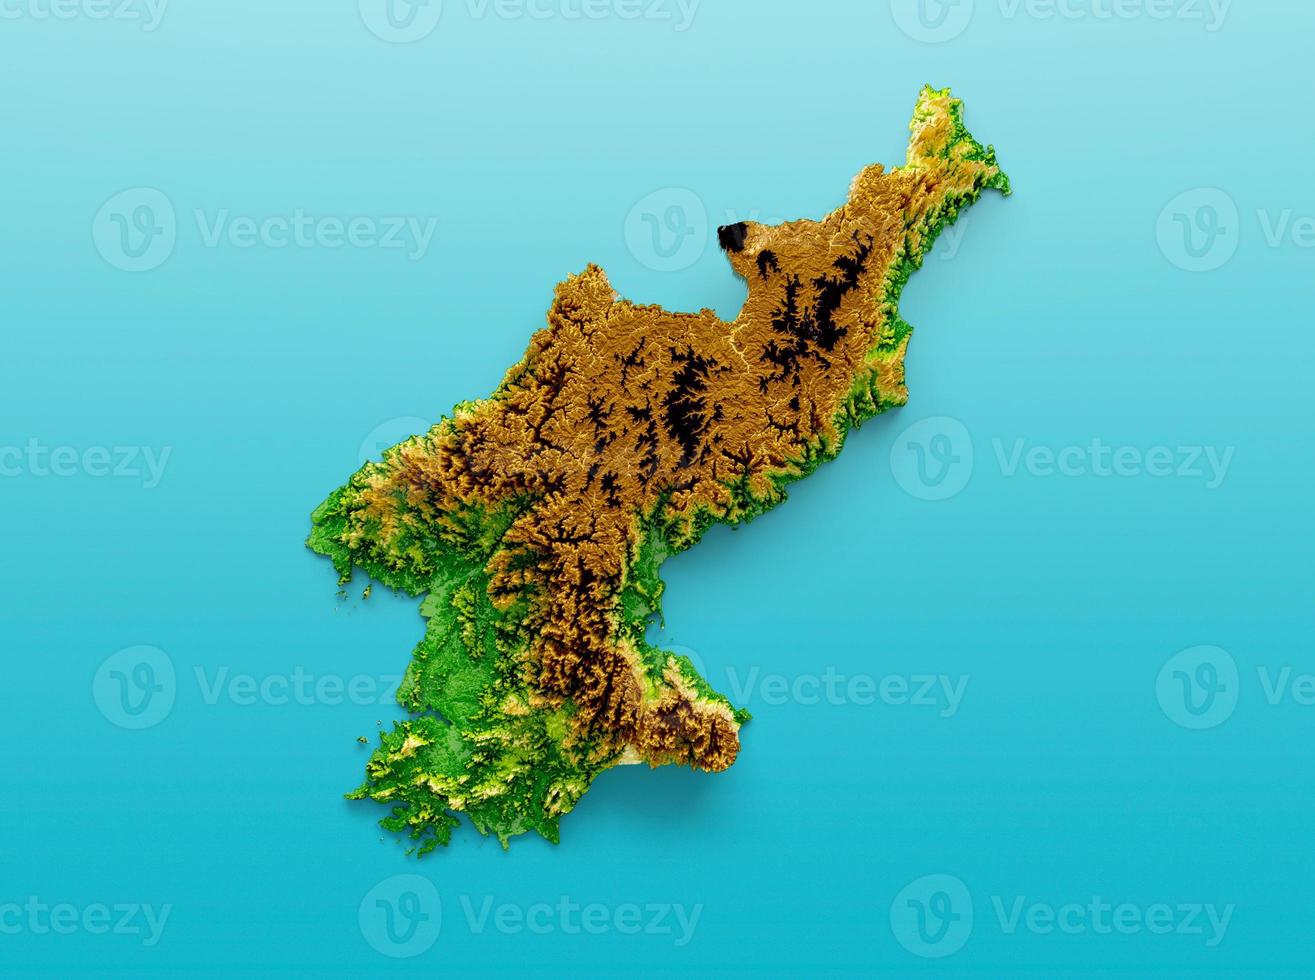 nordkorea karte schattierte relieffarbe höhenkarte auf dem meerblauen hintergrund 3d illustration foto